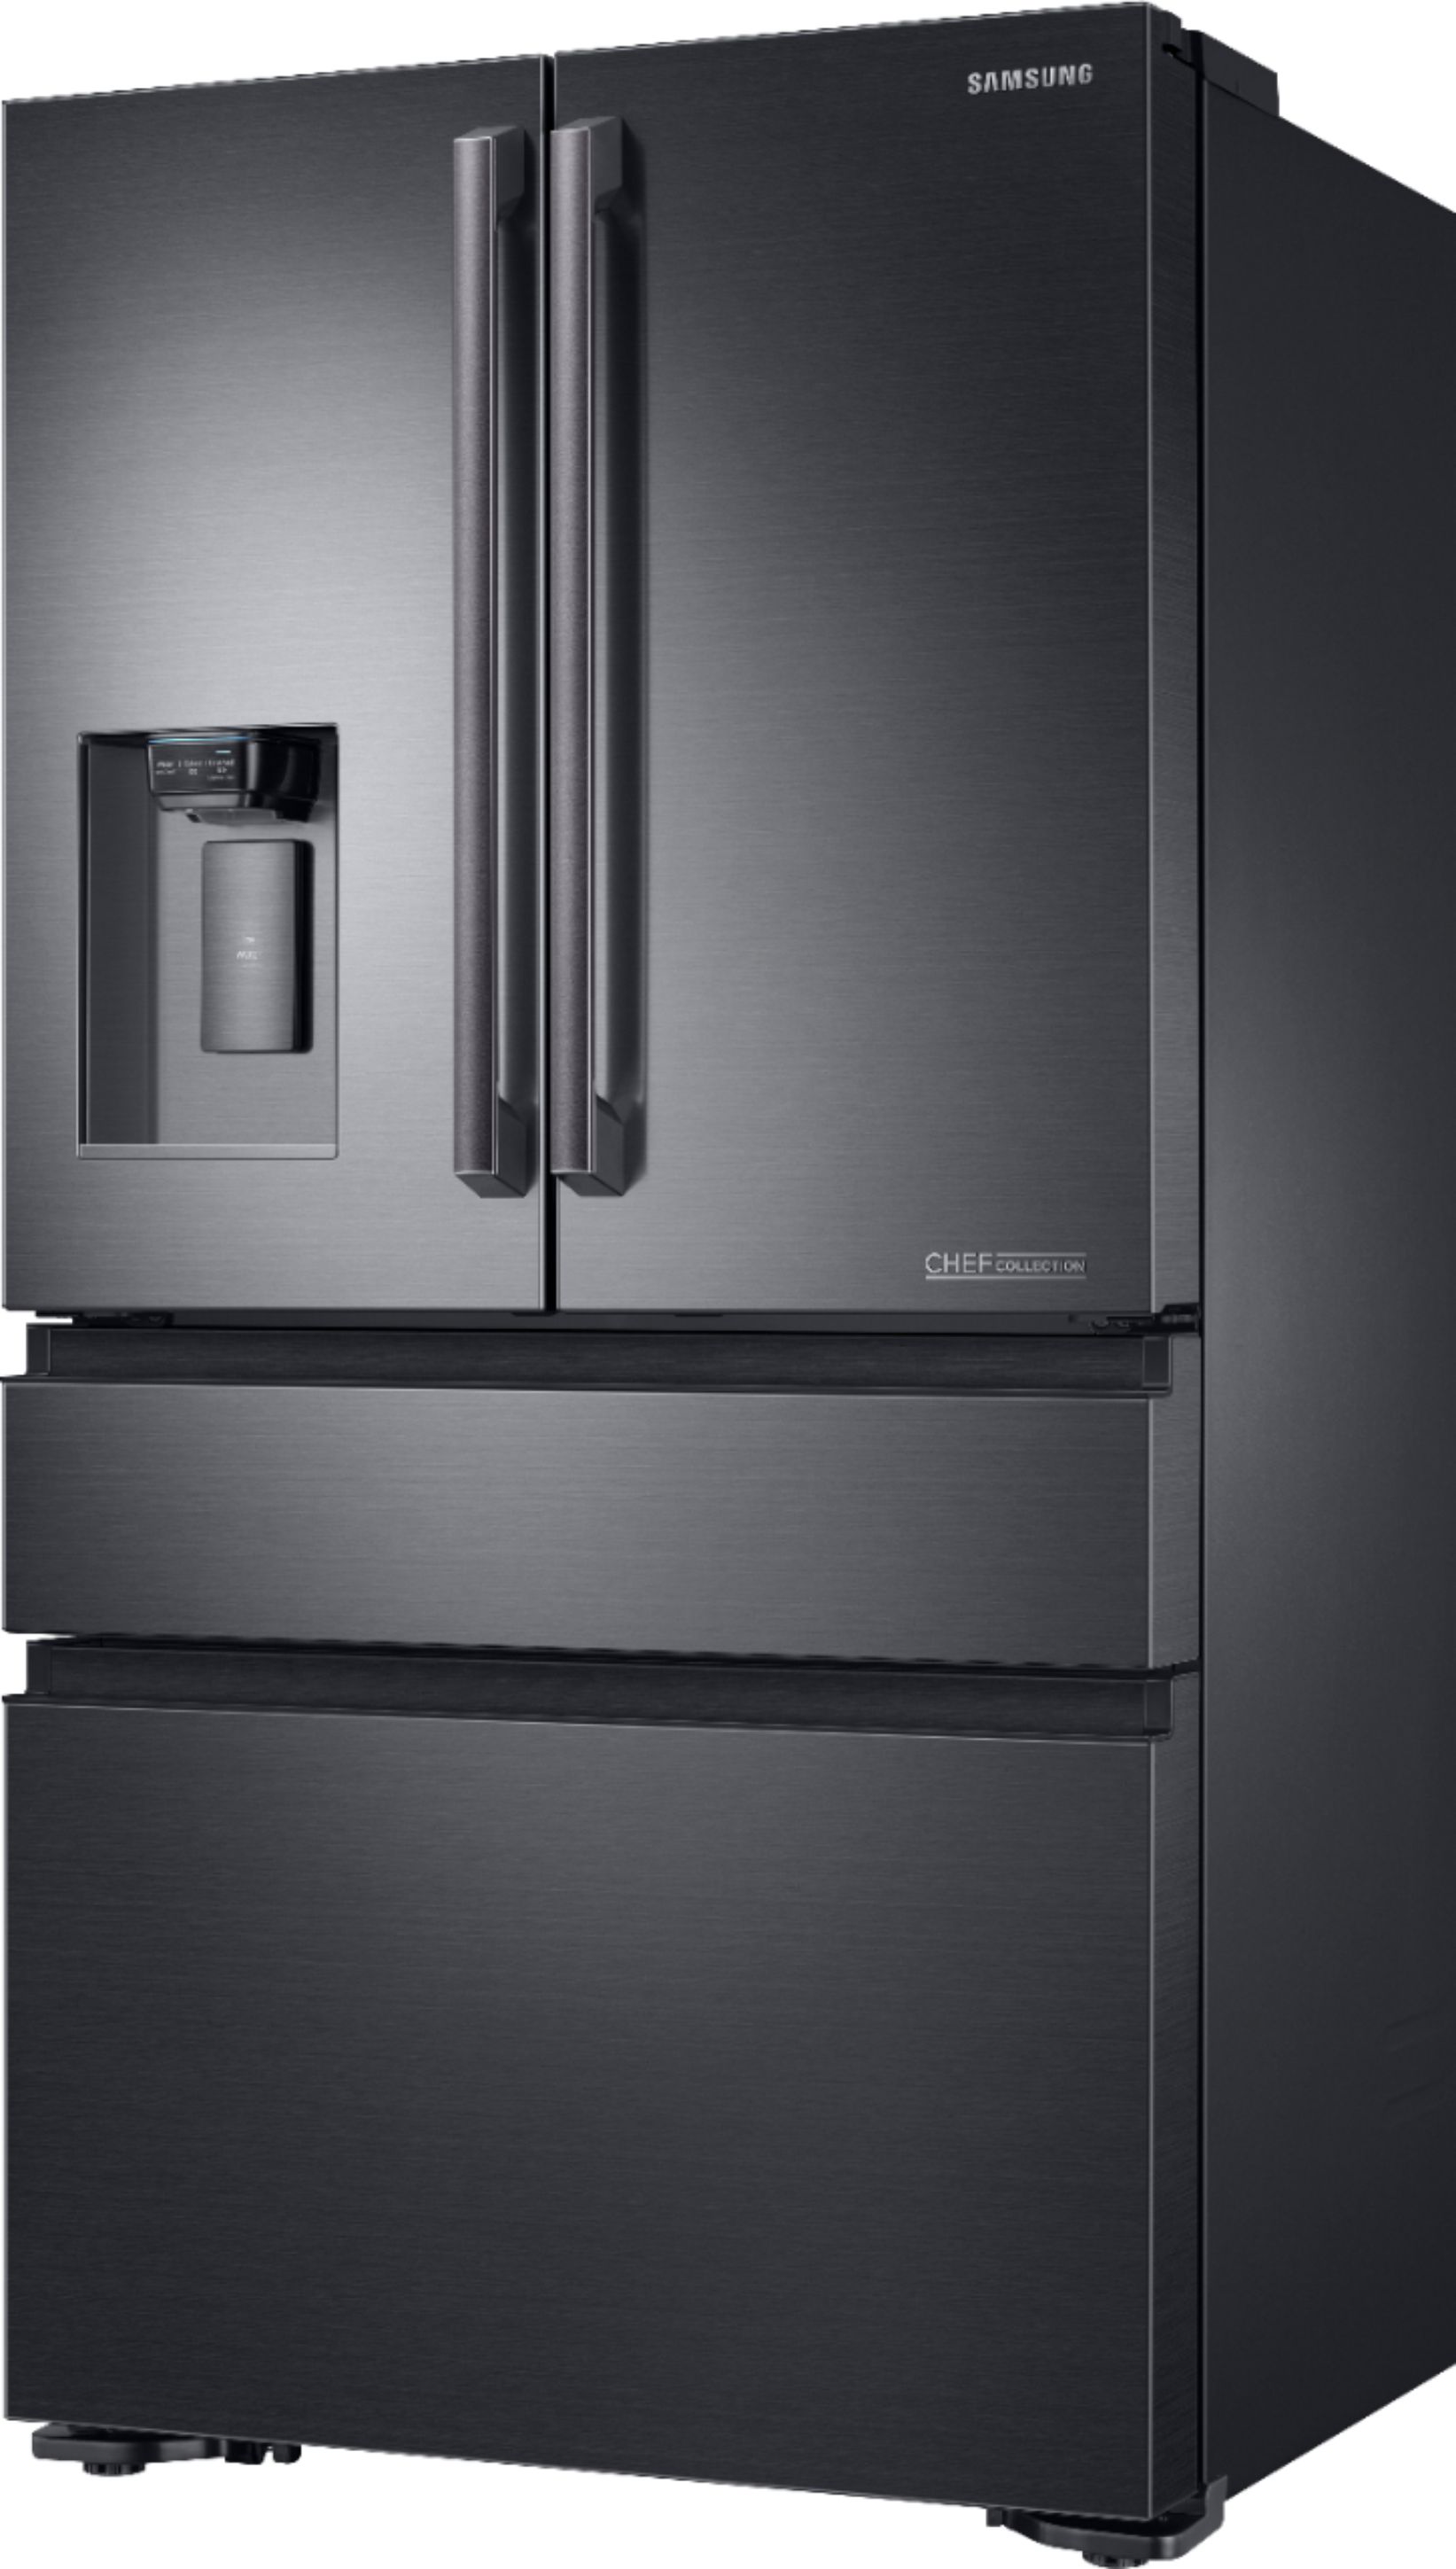 Left View: Samsung - Chef Collection 22.6 Cu. Ft. 4-Door Flex French Door Counter-Depth Fingerprint Resistant Refrigerator - Matte black stainless steel